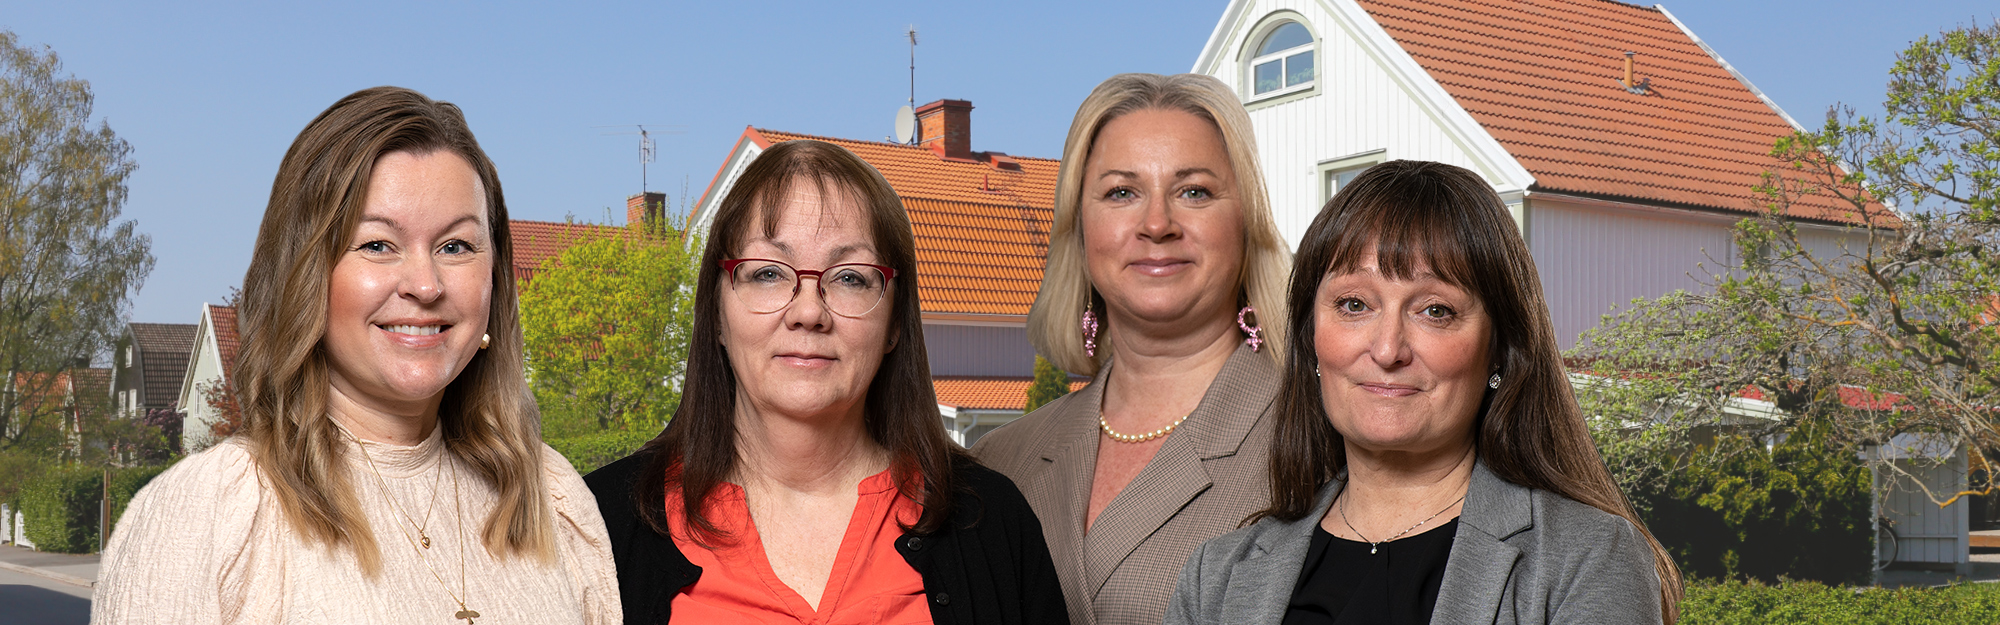 Kundrådgivare i Nyköping och Oxelösund